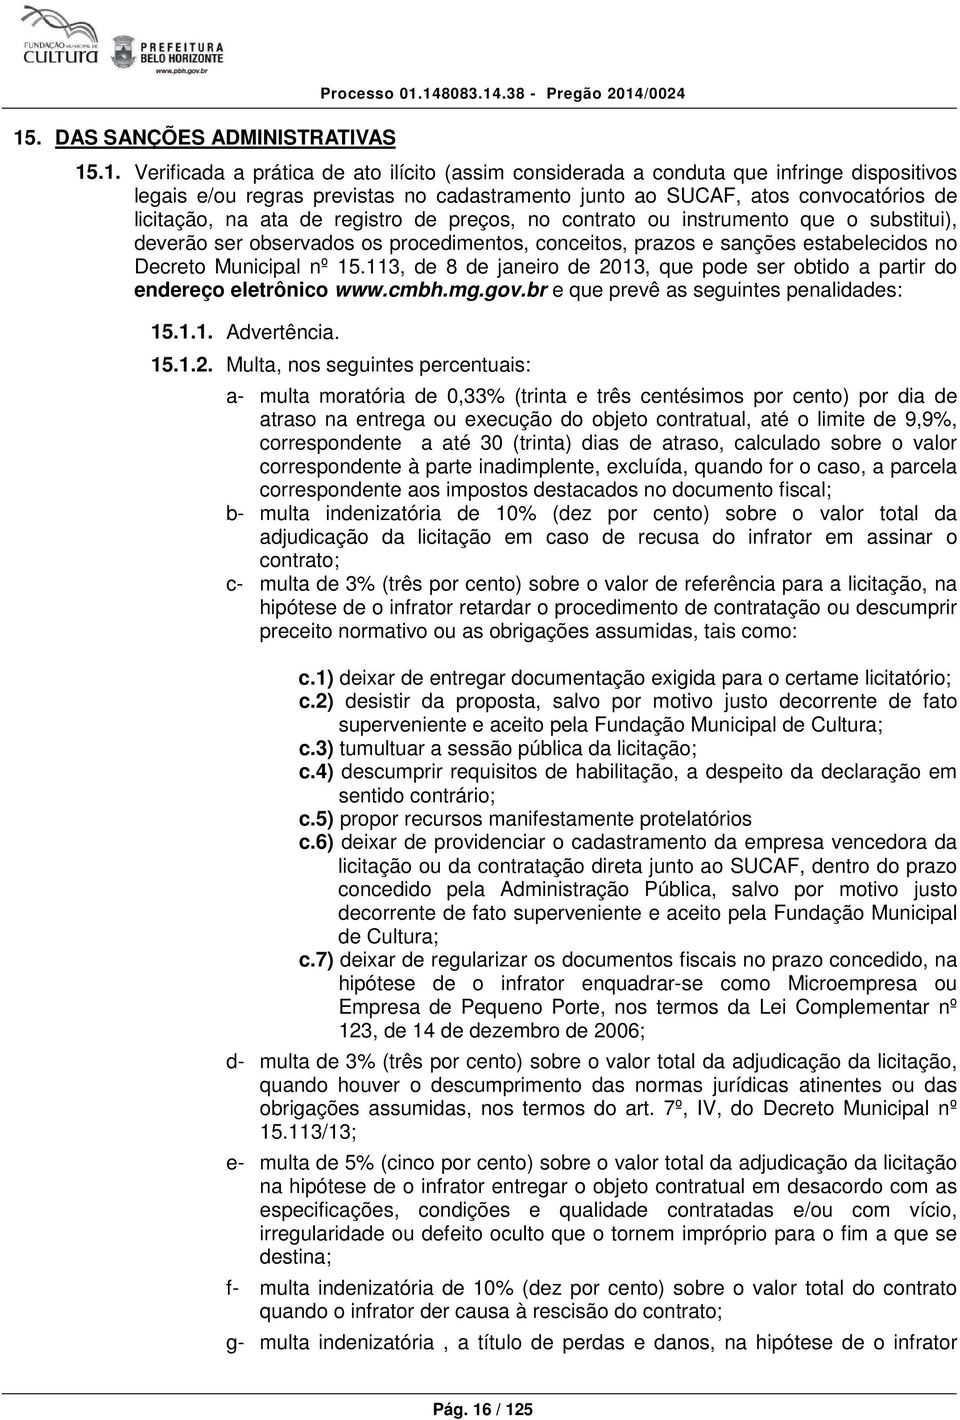 conceitos, prazos e sanções estabelecidos no Decreto Municipal nº 15.113, de 8 de janeiro de 2013, que pode ser obtido a partir do endereço eletrônico www.cmbh.mg.gov.